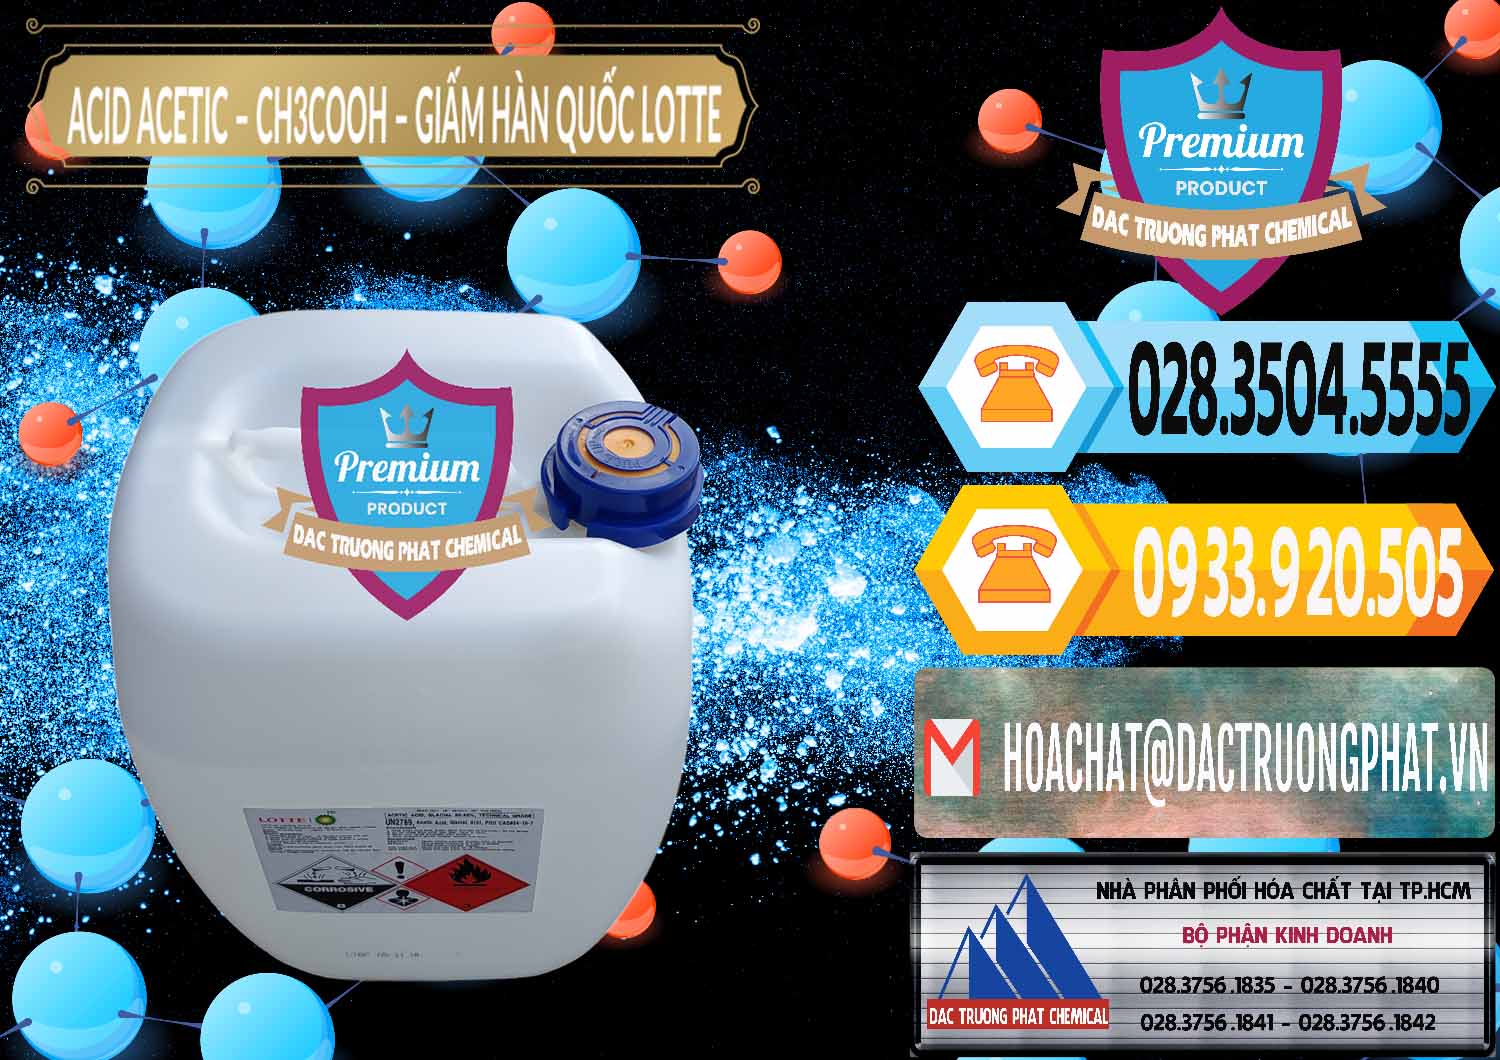 Cty chuyên kinh doanh & bán Acetic Acid – Axit Acetic Hàn Quốc Lotte Korea - 0002 - Cty chuyên bán và cung cấp hóa chất tại TP.HCM - hoachattayrua.net